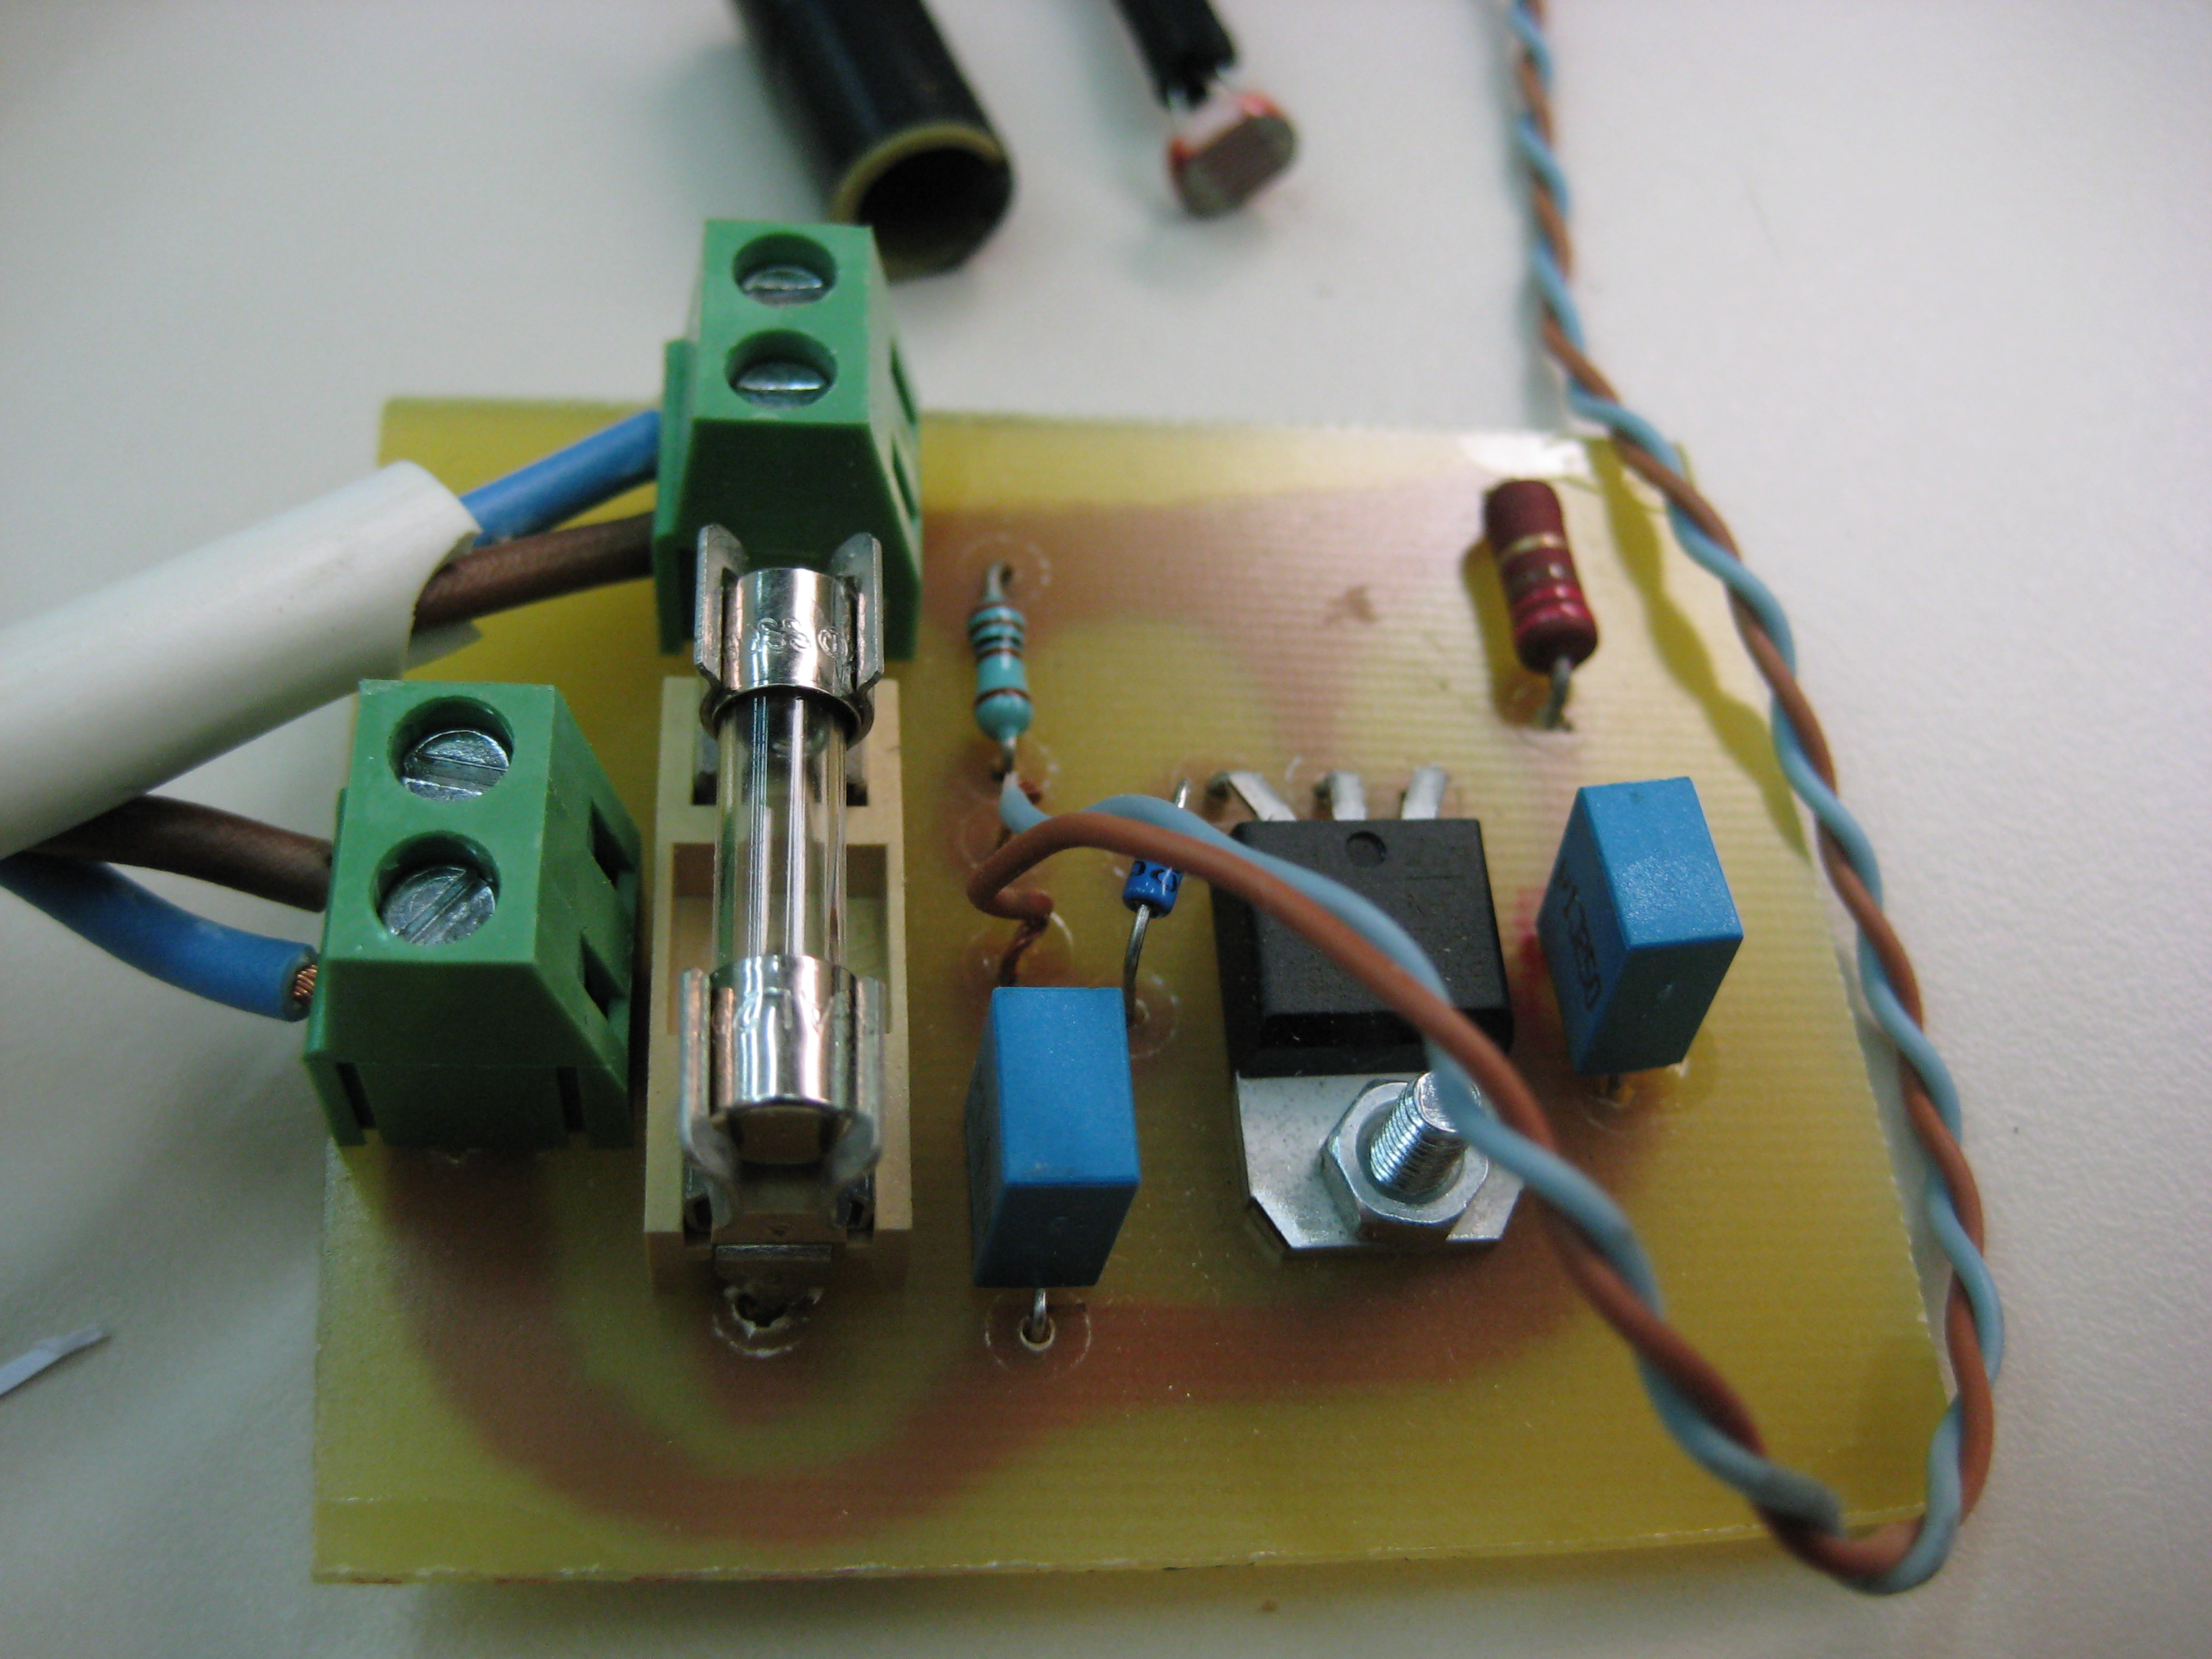   Circuito que regula la potencia de un circuito AC de 220V en función de la intensidad luminosa que incida sobre un LDR Debe protegerse en una caja aislada porque […]